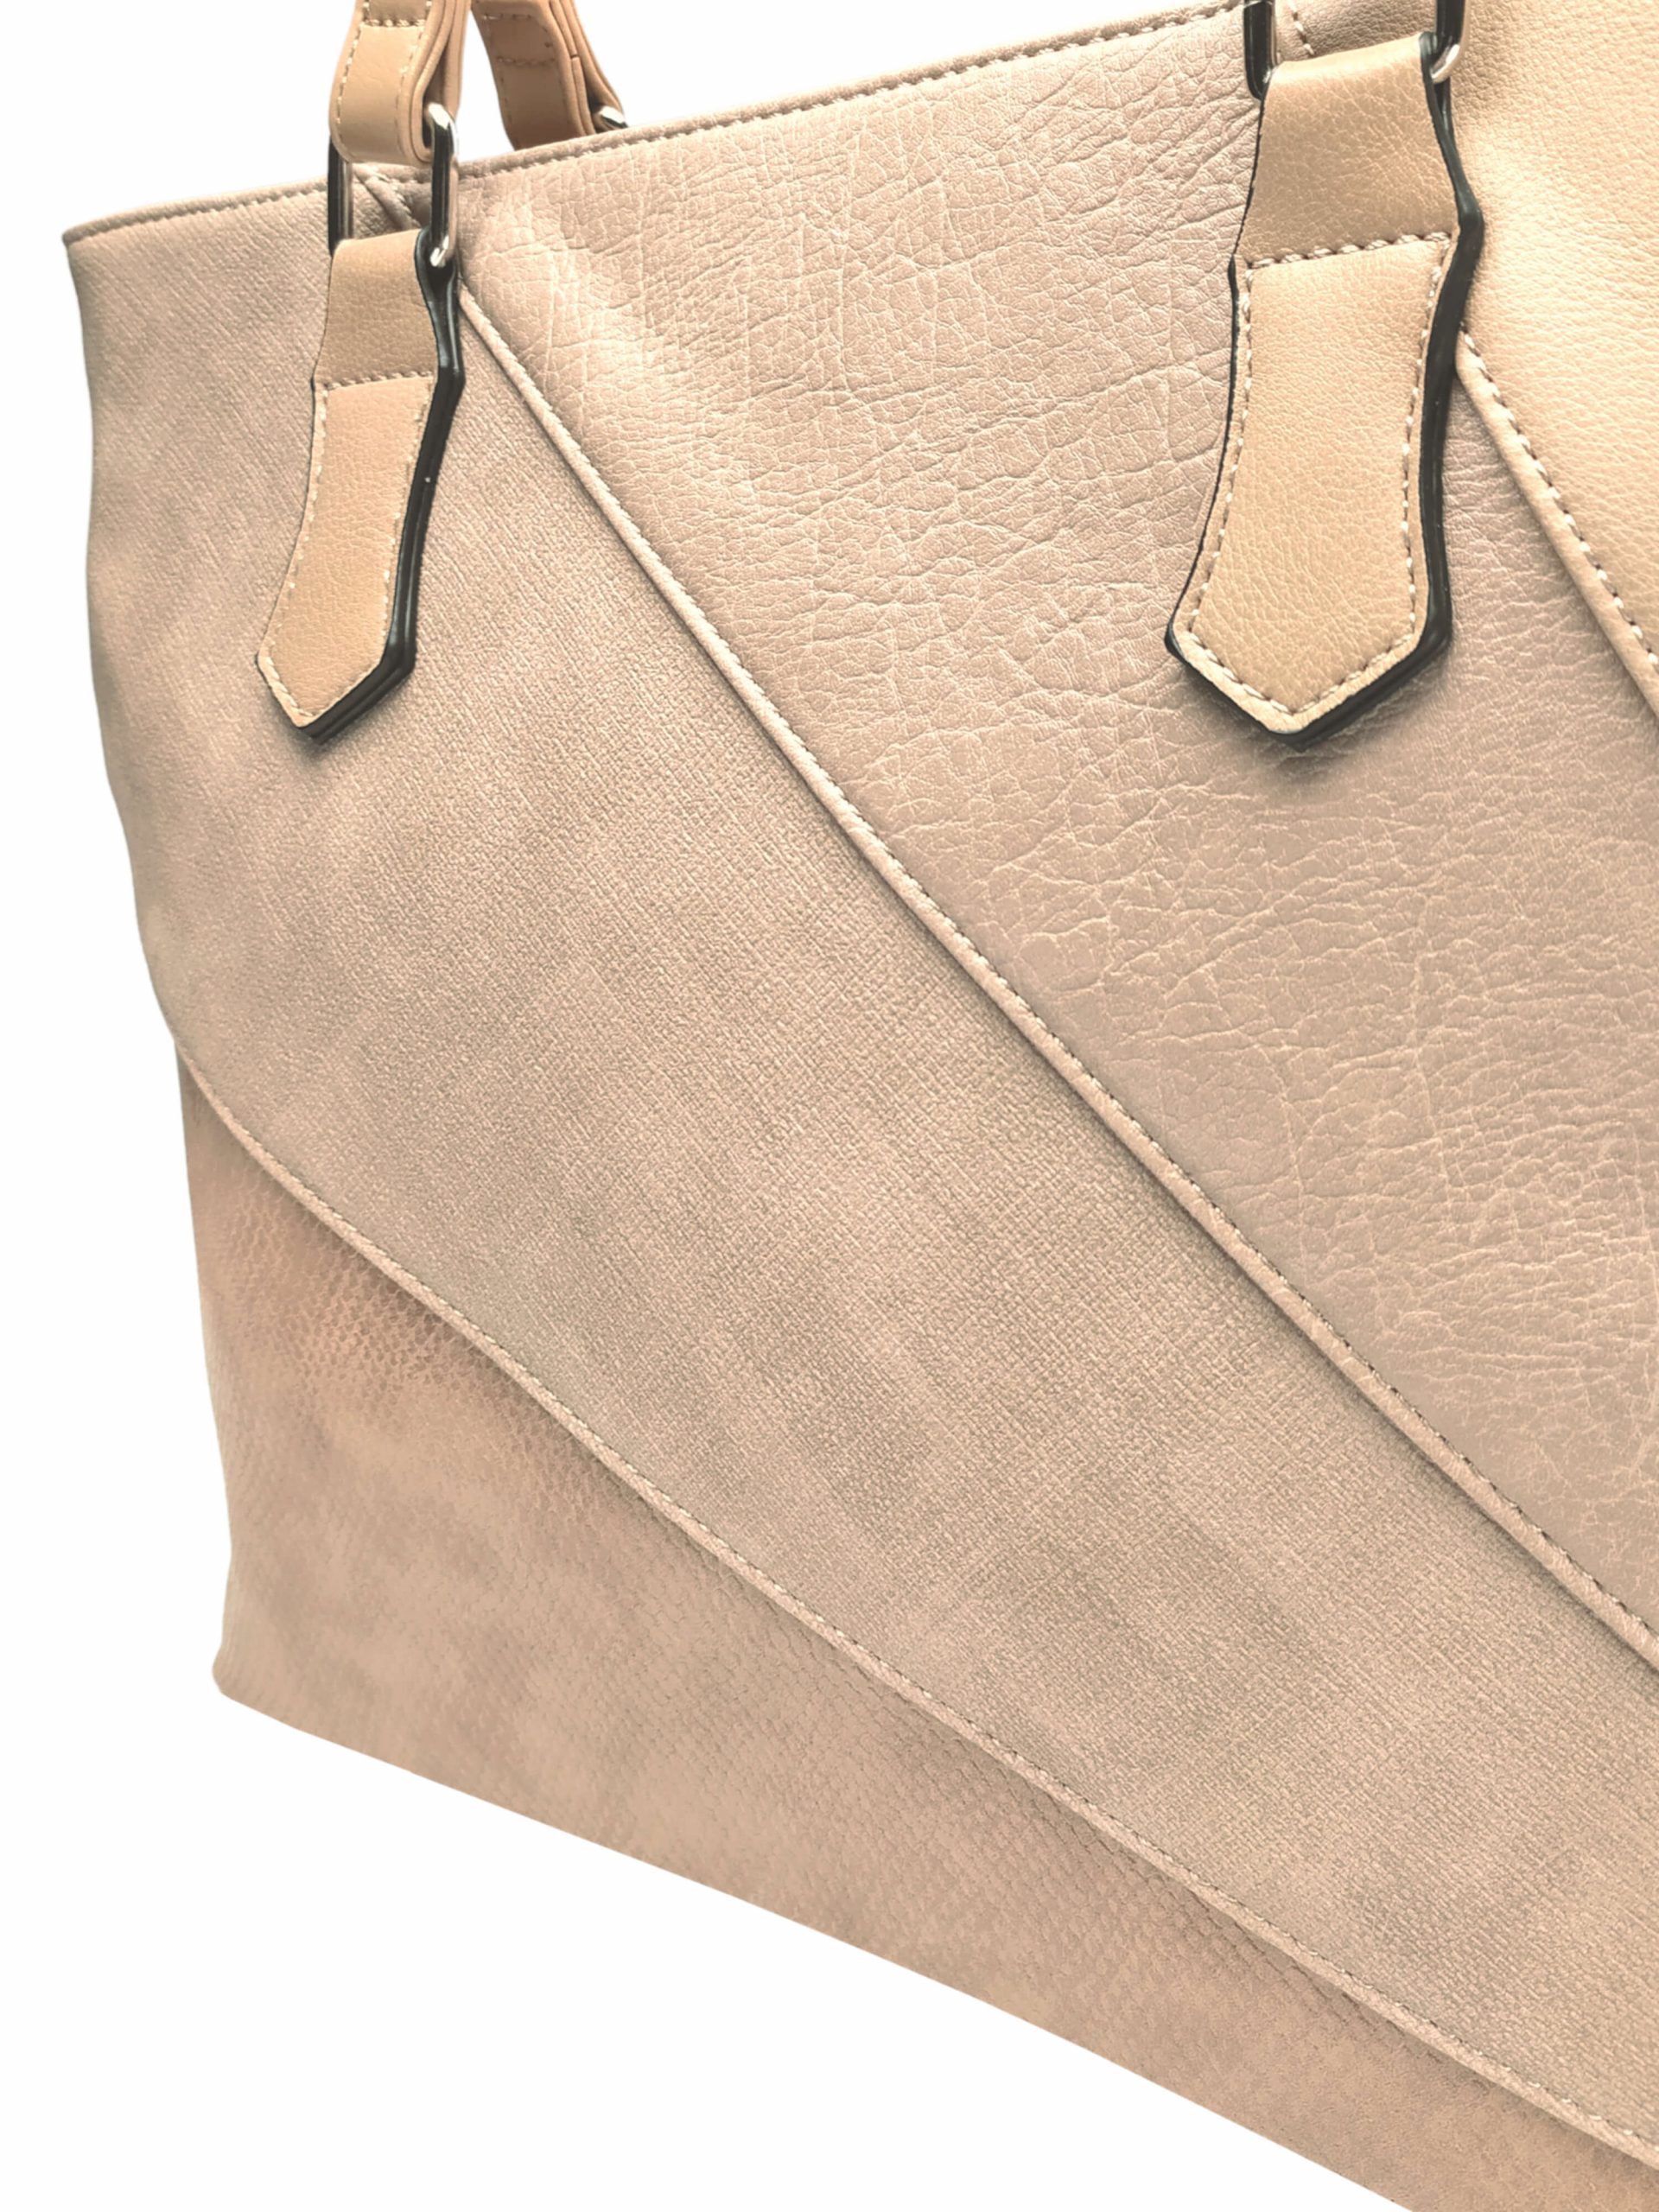 Světle hnědá dámská kabelka přes rameno se vzory, Tapple, H17224, detail kabelky přes rameno